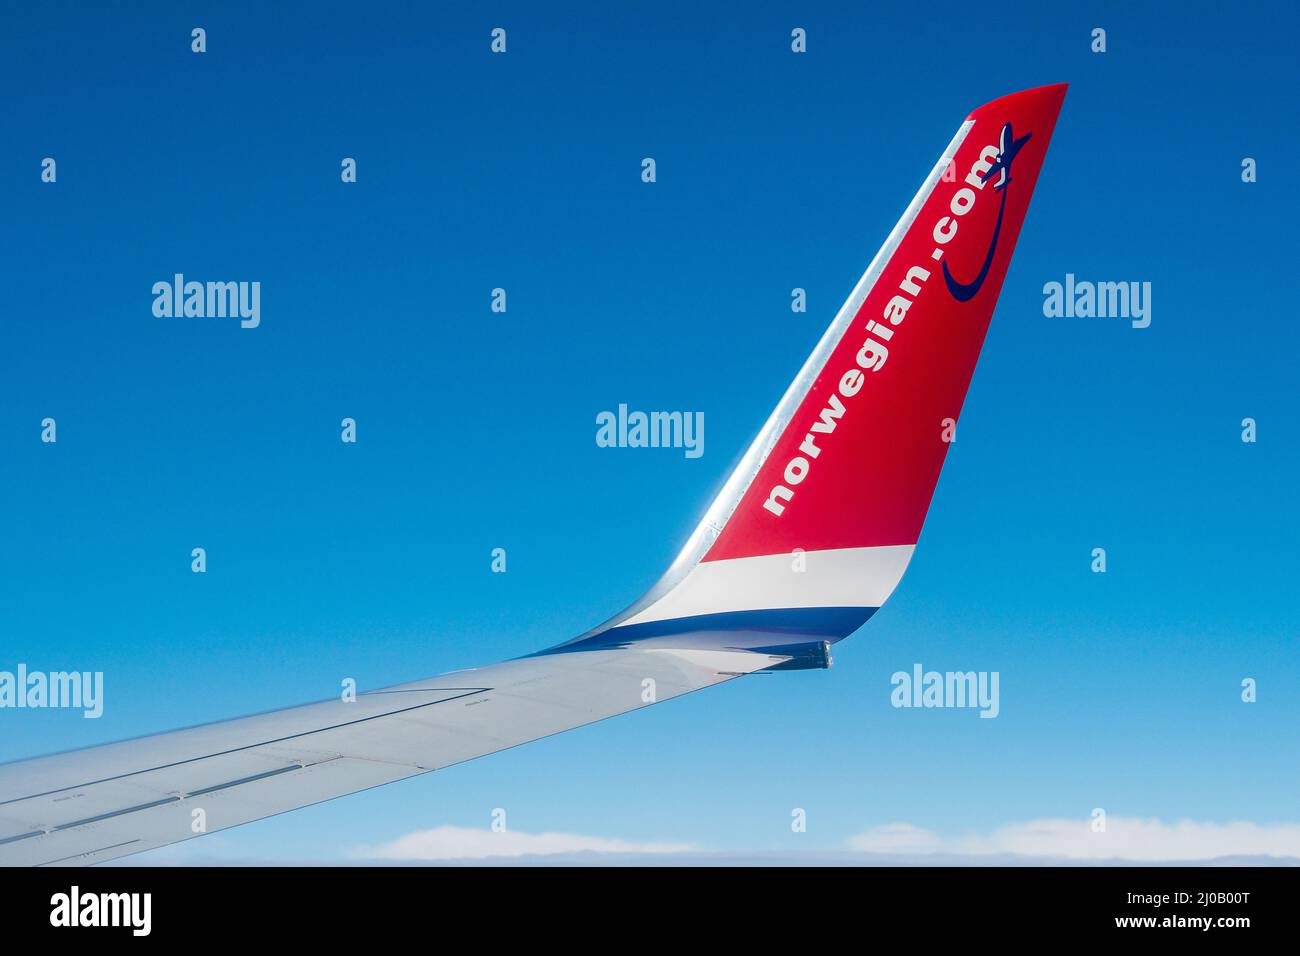 Logotipo de la aerolínea Norwegian.com de avión Fotografía de stock - Alamy